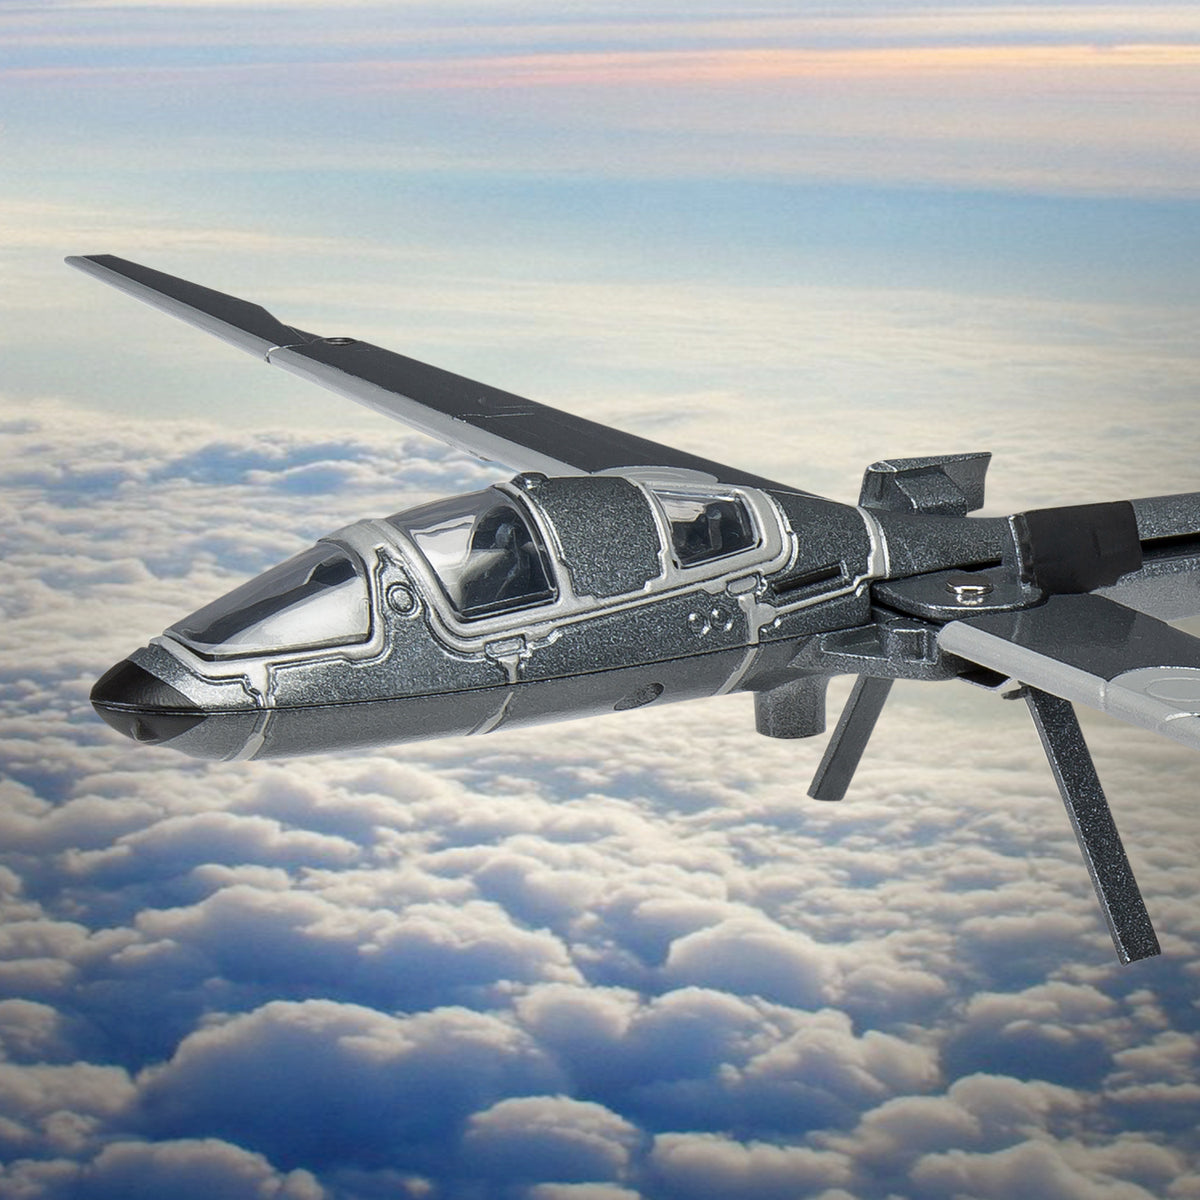 James Bond Q Segelflugzeugmodell - Keine Zeit zu sterben Edition - Von Corgi